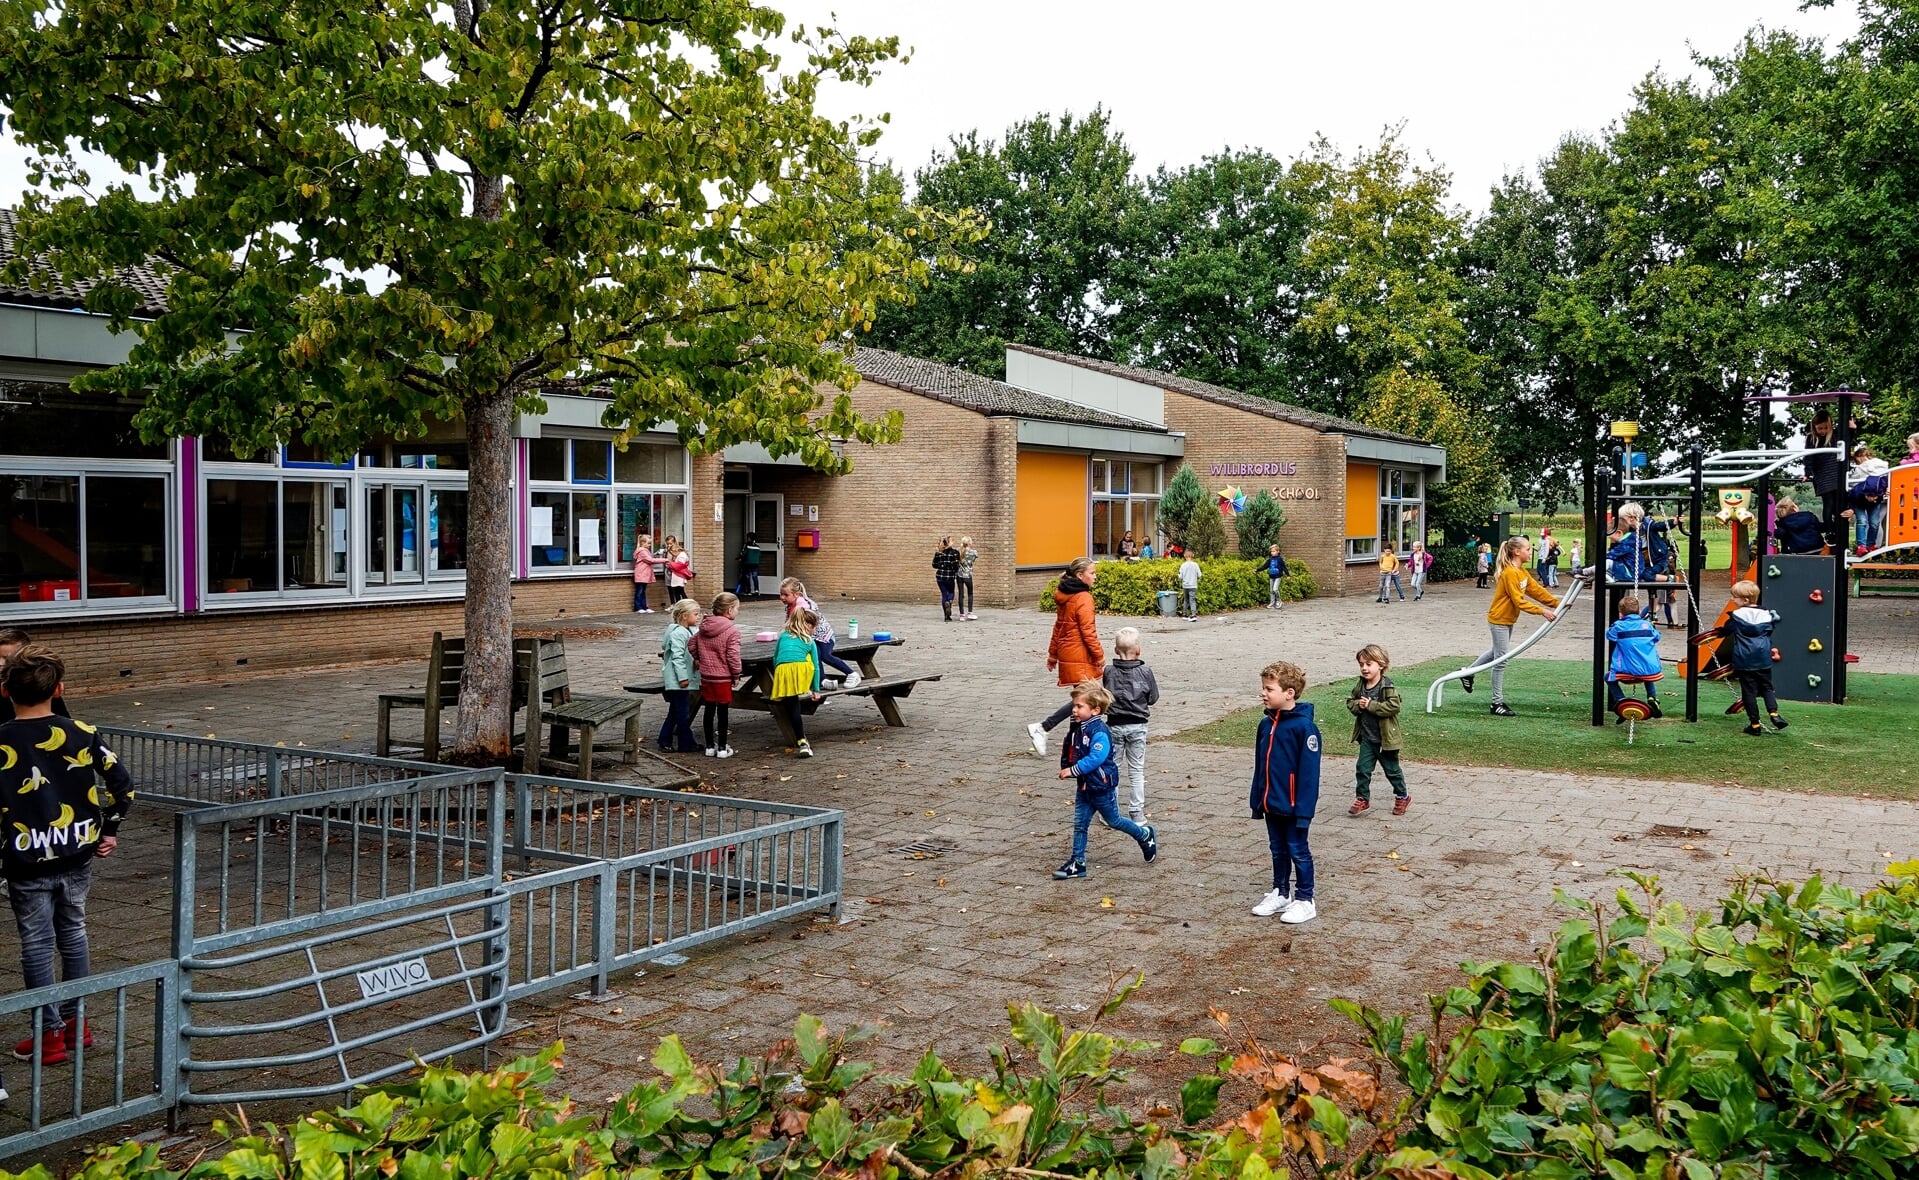 De Willibrordusschool in Esch is aan vernieuwing toe. De jarenlange discussie over nieuwbouw lijkt bijna afgerond. 